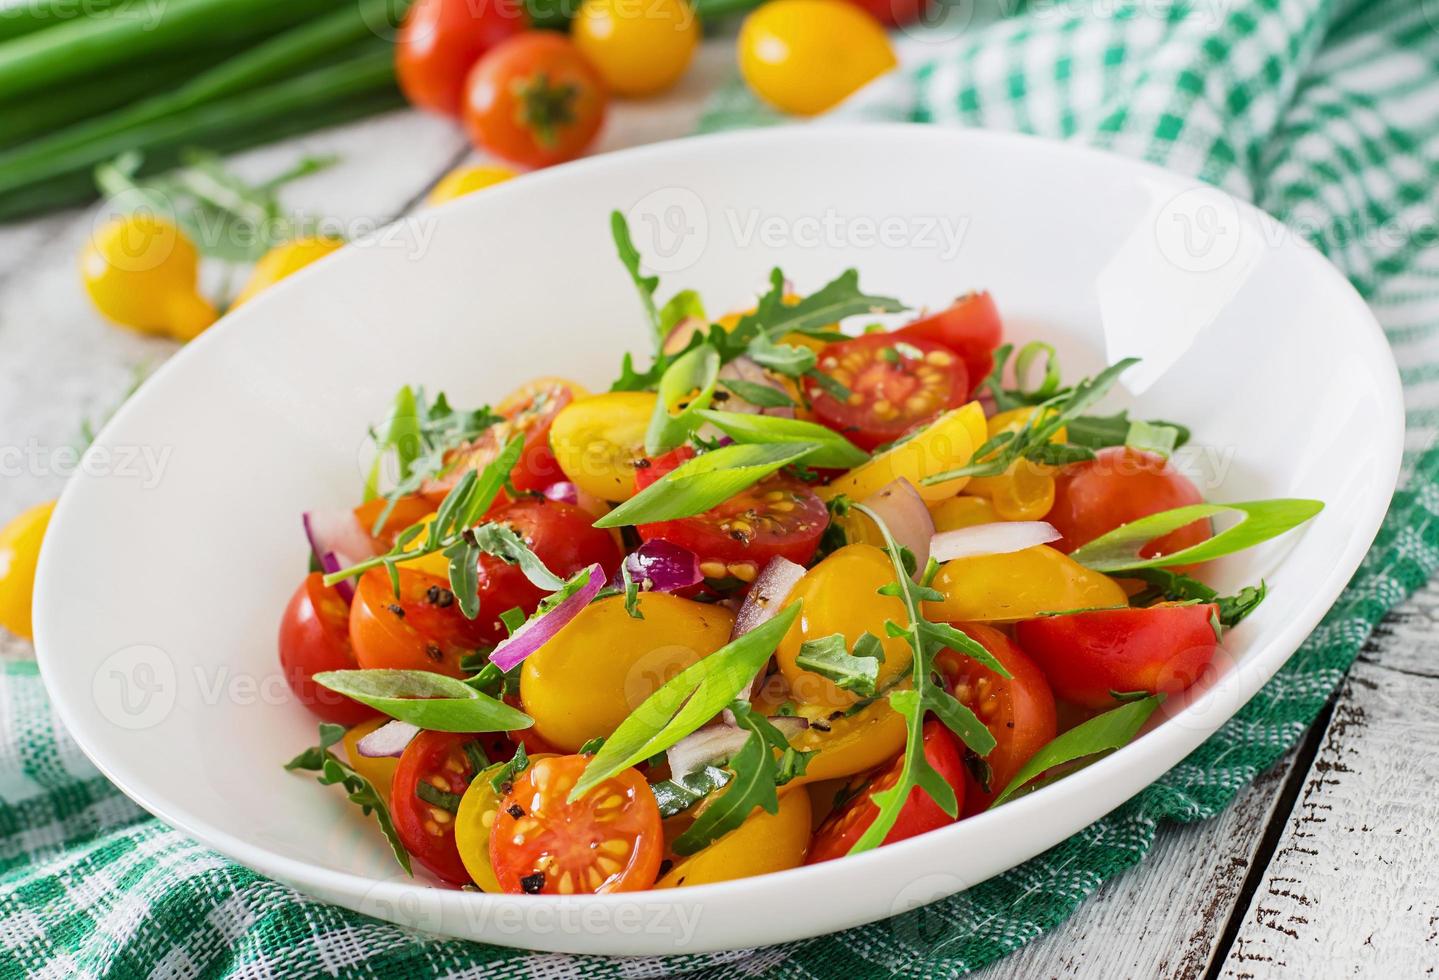 salada de tomate cereja fresco com cebola e rúcula foto